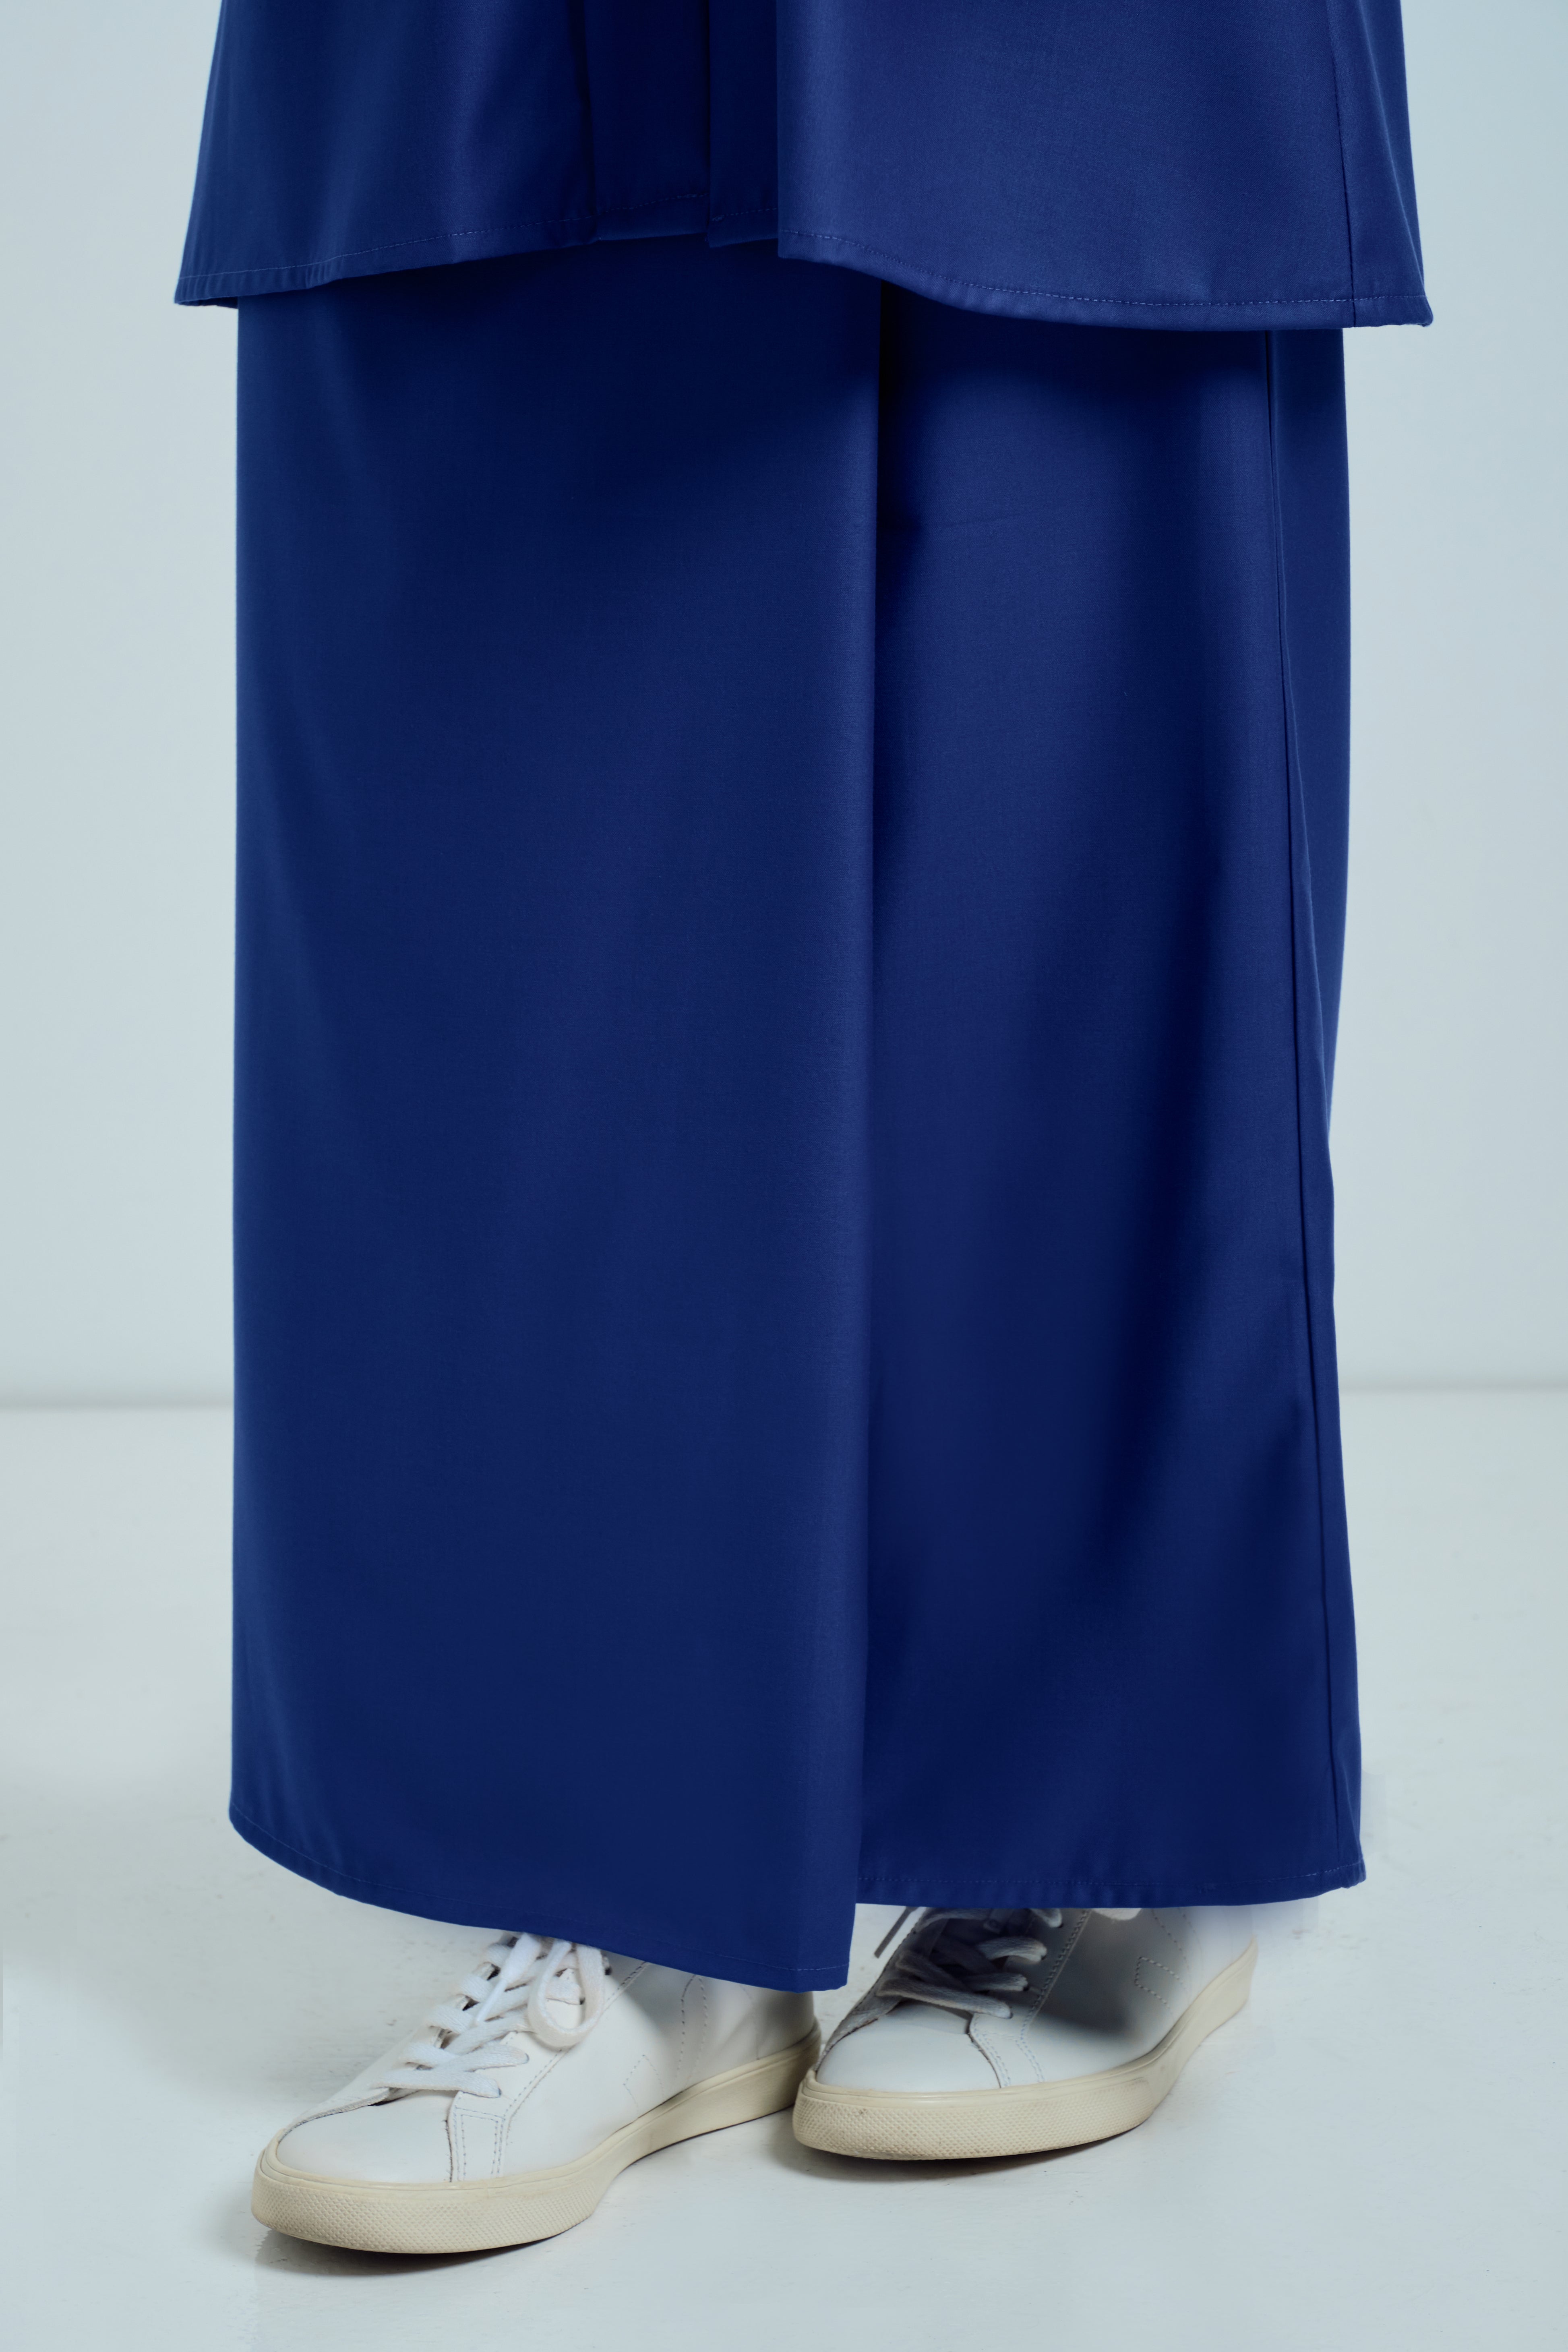 Patawali Baju Kebaya - Royal Blue